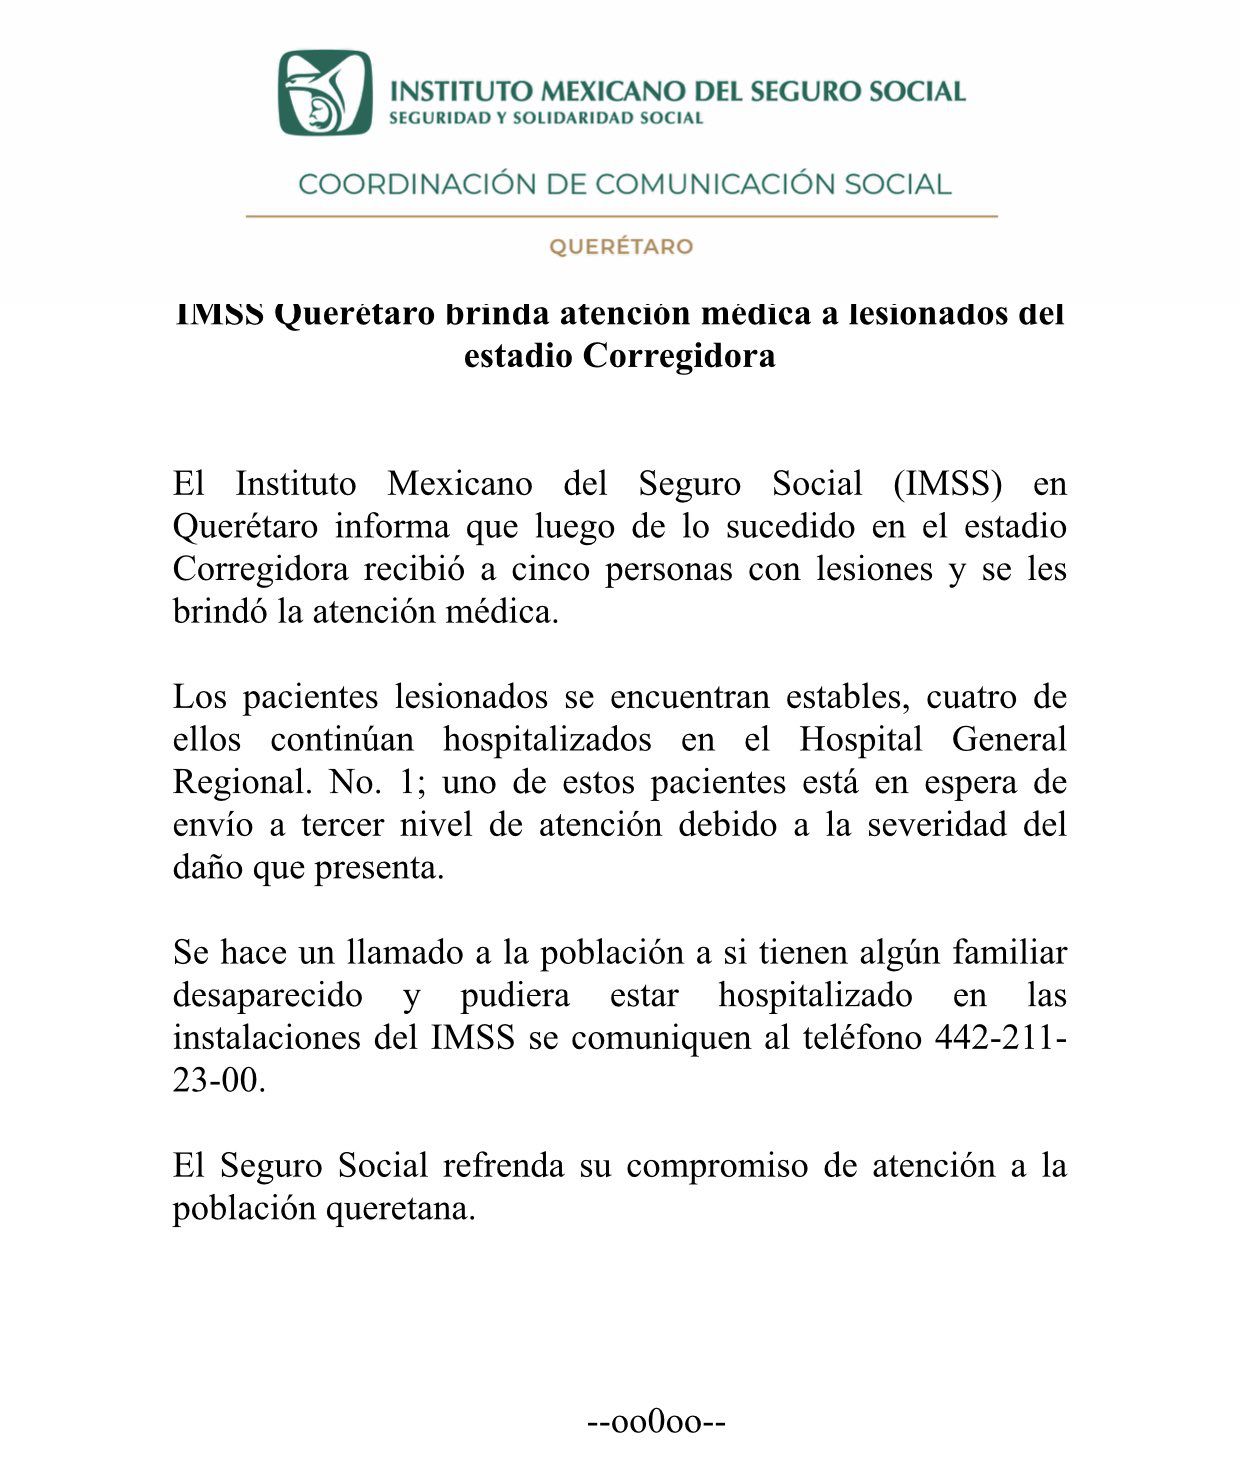 El IMSS en Querétaro habilitó una línea de ayuda tras lo ocurrido en el Estadio Corregidora (Foto: Cortesía IMSS)